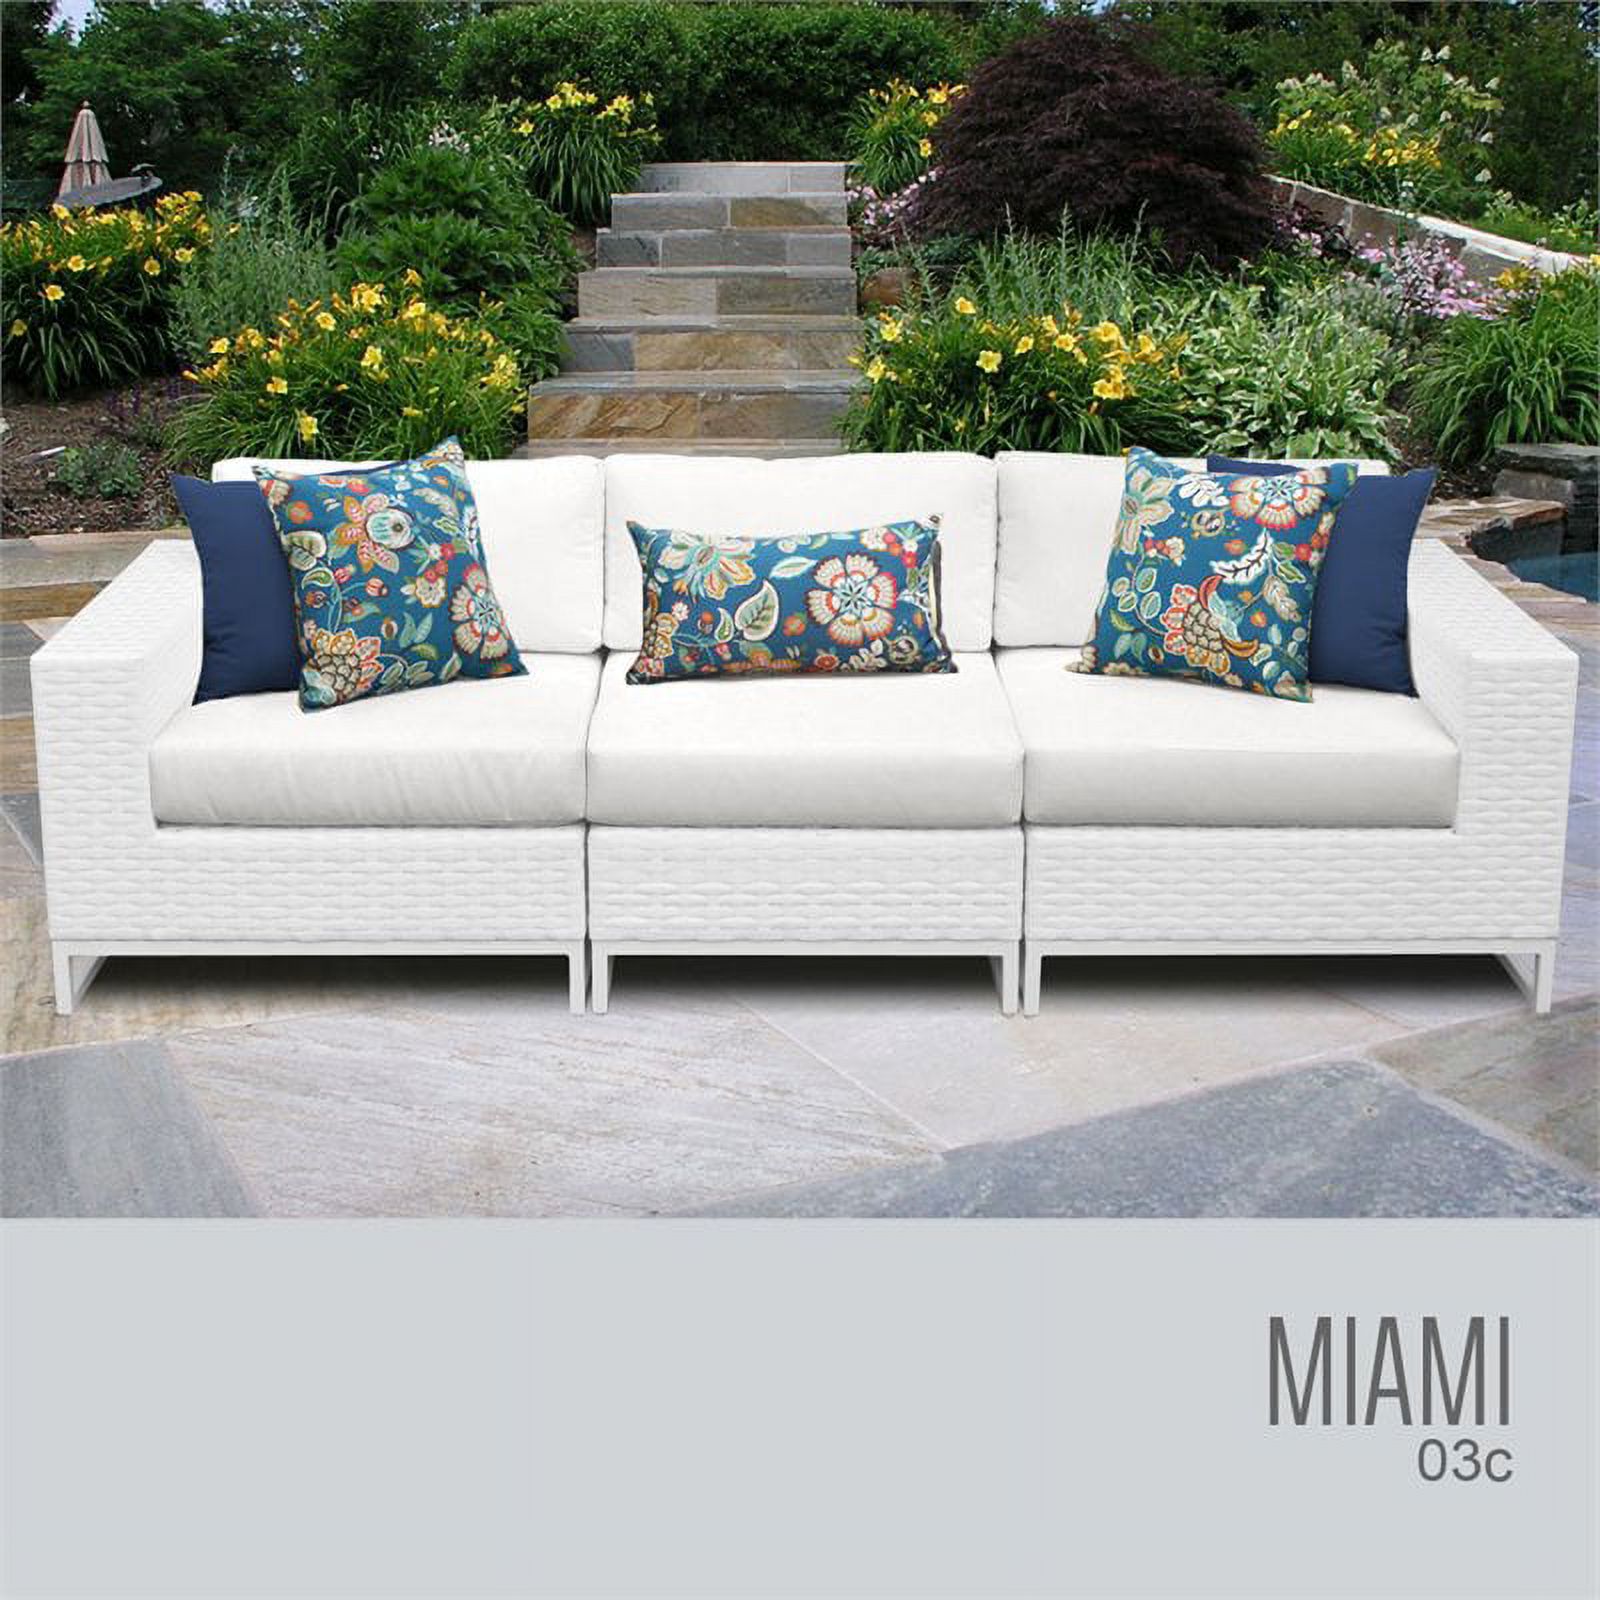 TK Classic Miami 3 Piece Hand Woven Wicker Patio Sofa in White - image 1 of 5